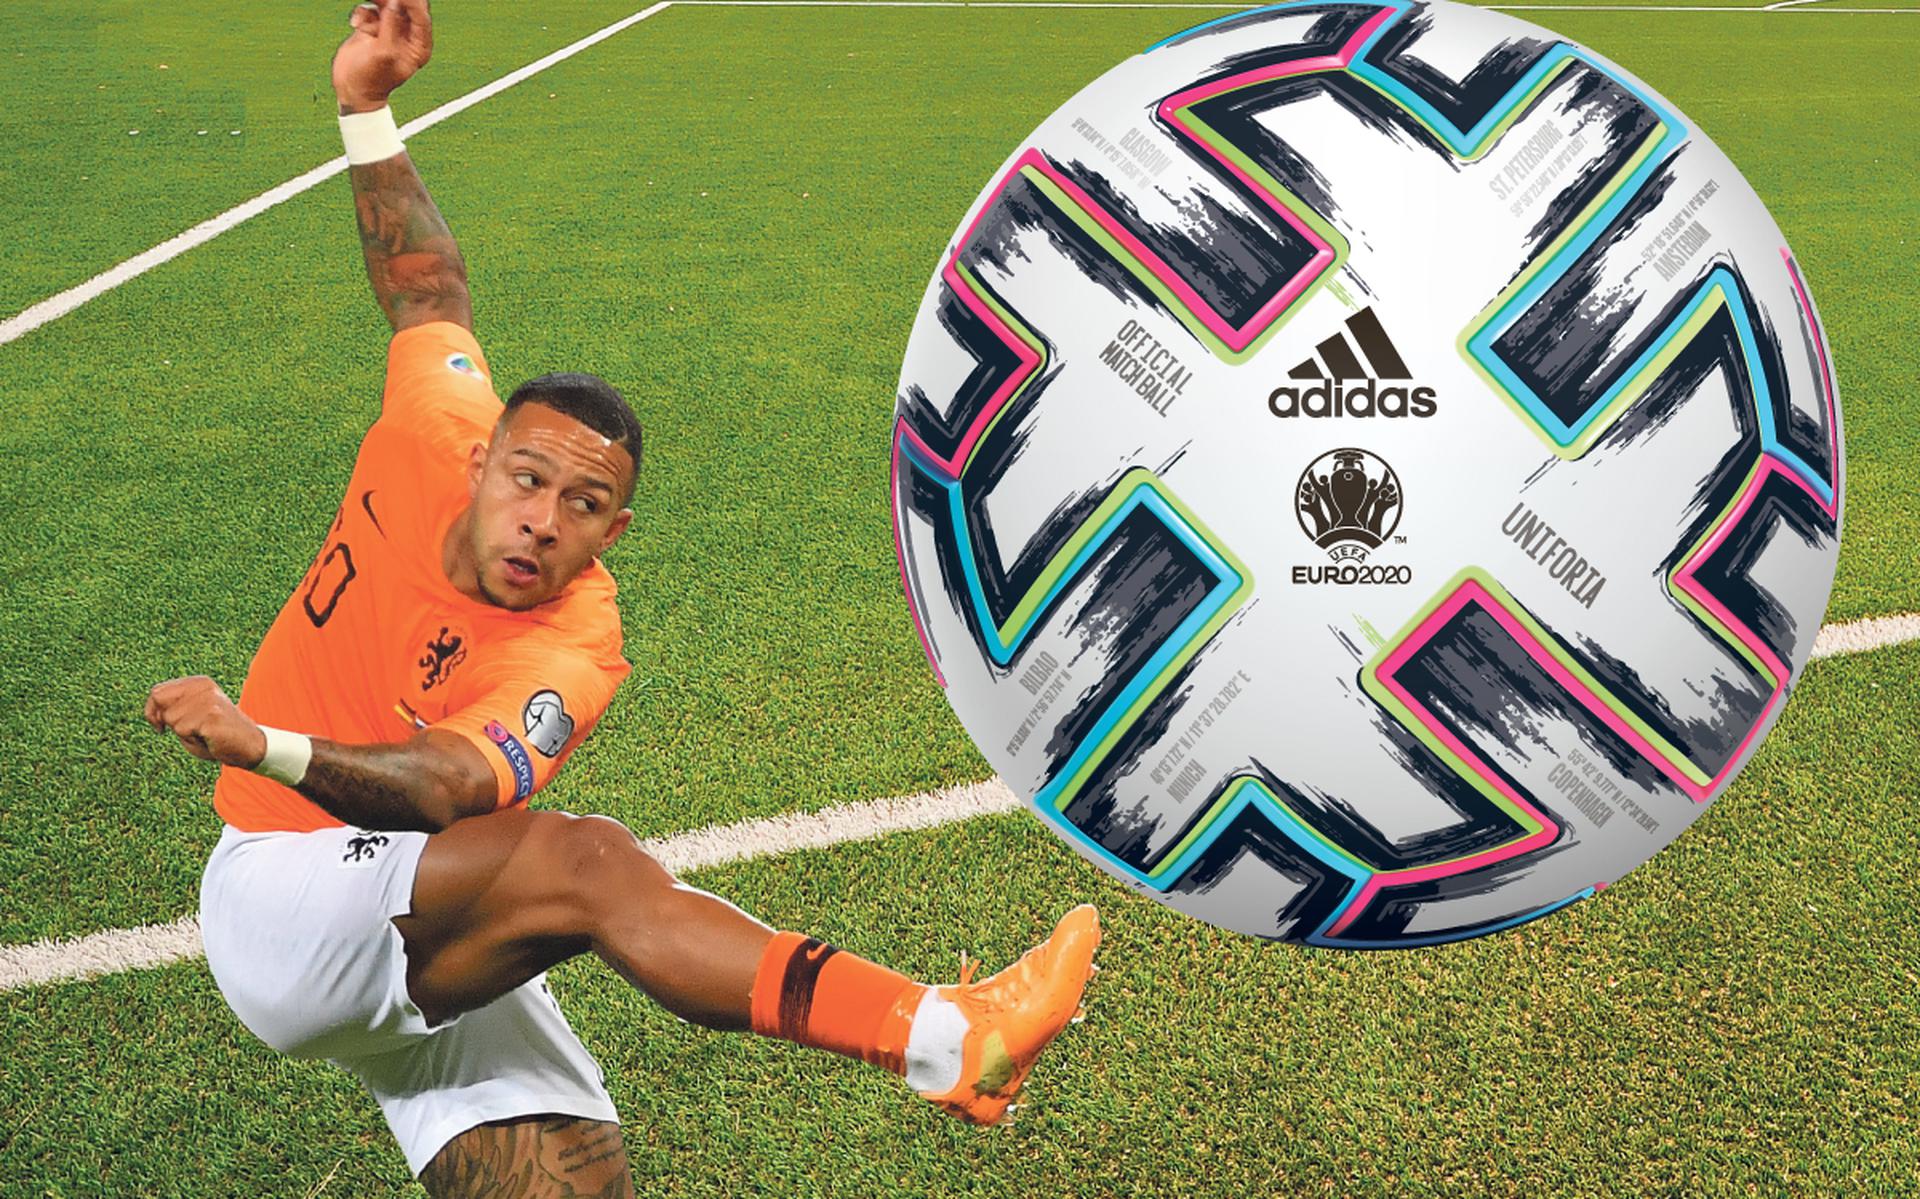 Literaire kunsten knop straffen Dit is de kleurrijke bal waar de spelers op het EK voetbal tegen aan  schoppen, de Unifiora | in beeld - Dagblad van het Noorden